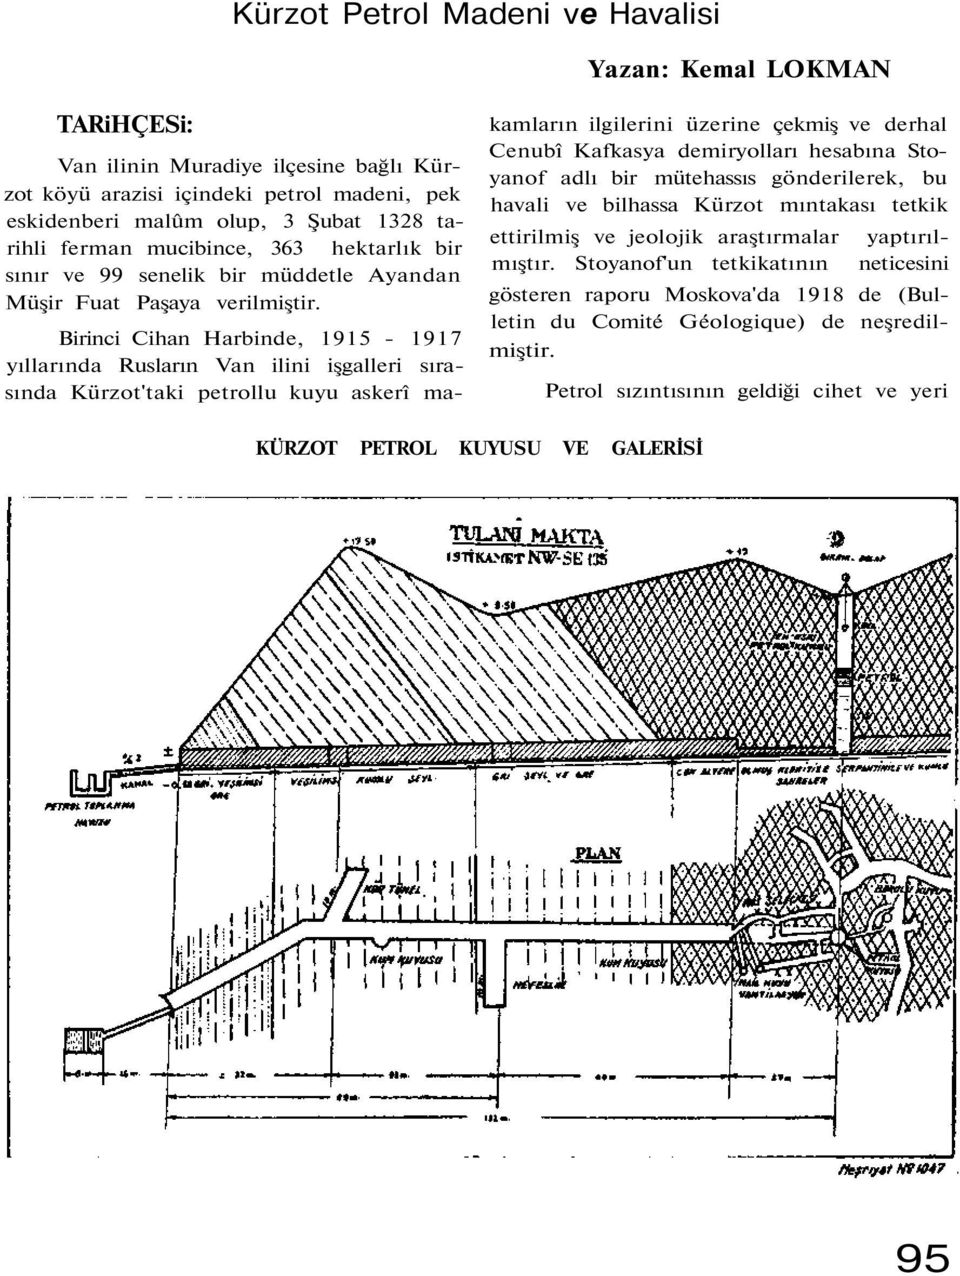 Birinci Cihan Harbinde, 1915-1917 yıllarında Rusların Van ilini işgalleri sırasında Kürzot'taki petrollu kuyu askerî makamların ilgilerini üzerine çekmiş ve derhal Cenubî Kafkasya demiryolları